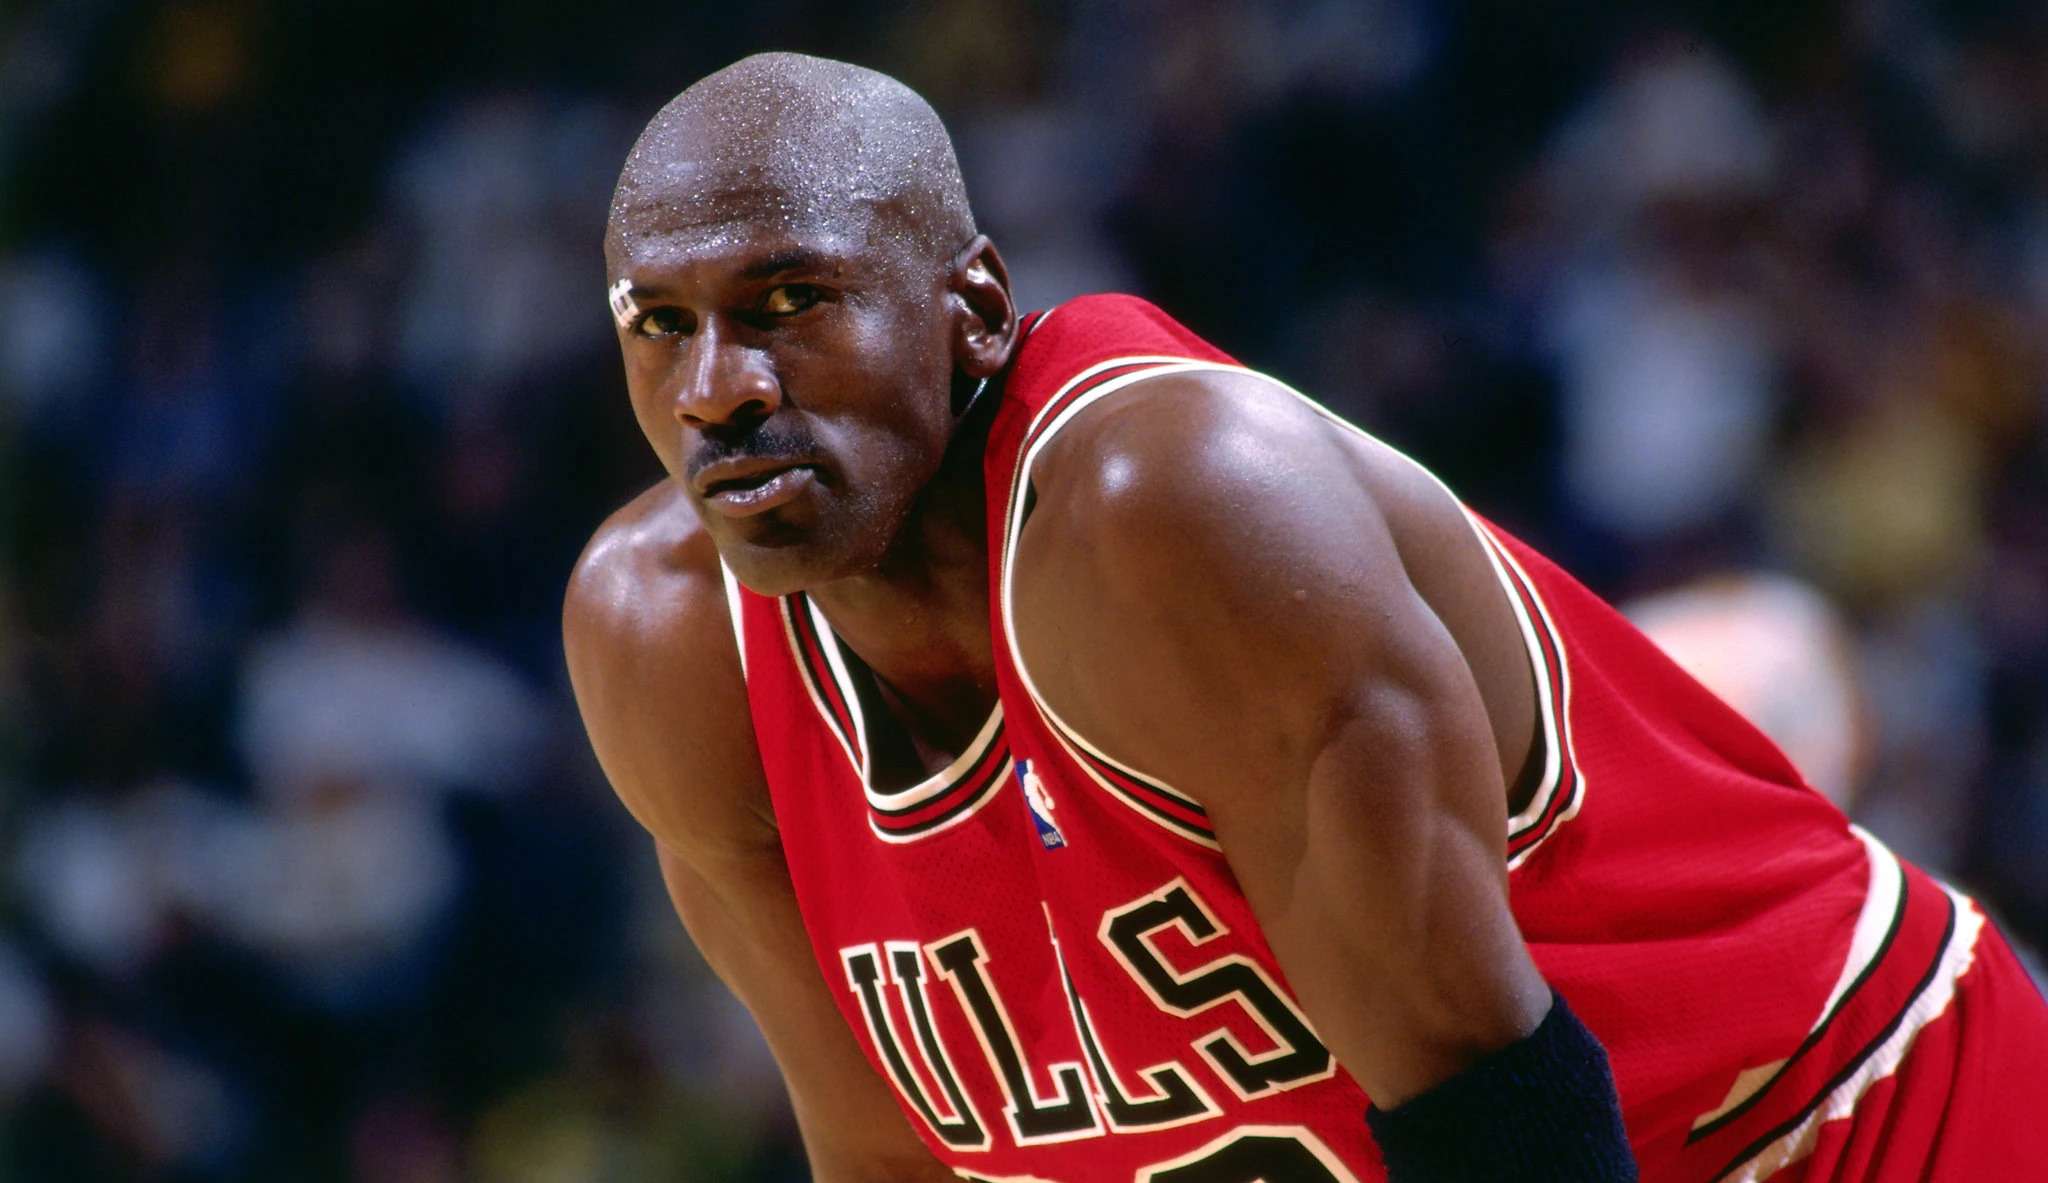 Ex-jogador de basquete Michael Jordan tem casa invadida